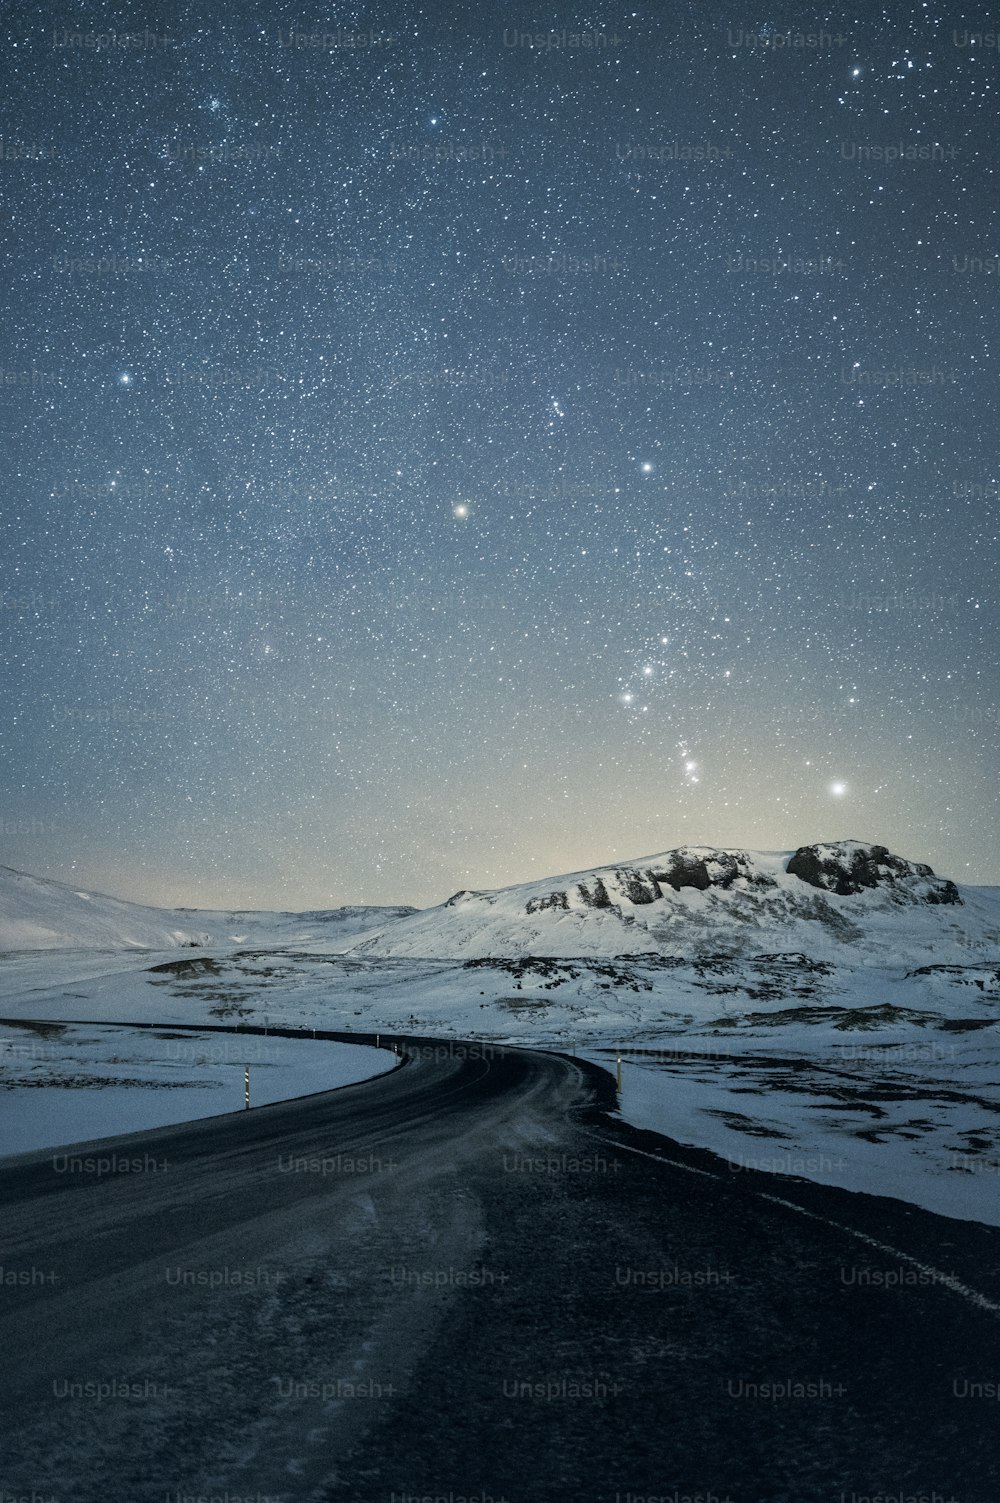 Le ciel nocturne est rempli d’étoiles au-dessus d’une montagne enneigée